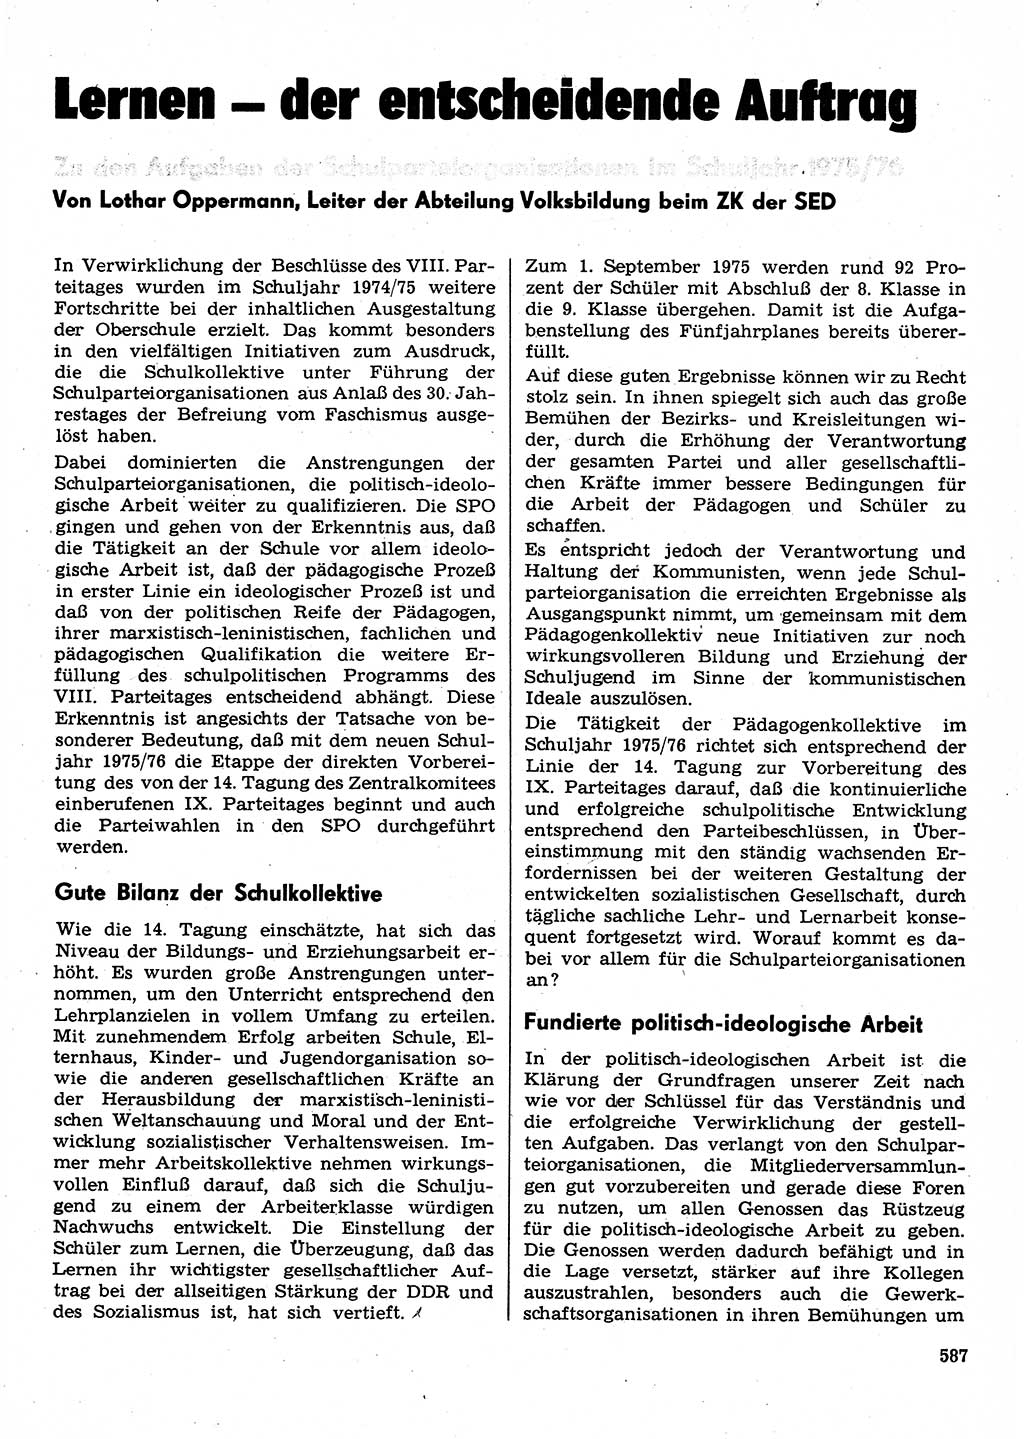 Neuer Weg (NW), Organ des Zentralkomitees (ZK) der SED (Sozialistische Einheitspartei Deutschlands) für Fragen des Parteilebens, 30. Jahrgang [Deutsche Demokratische Republik (DDR)] 1975, Seite 587 (NW ZK SED DDR 1975, S. 587)